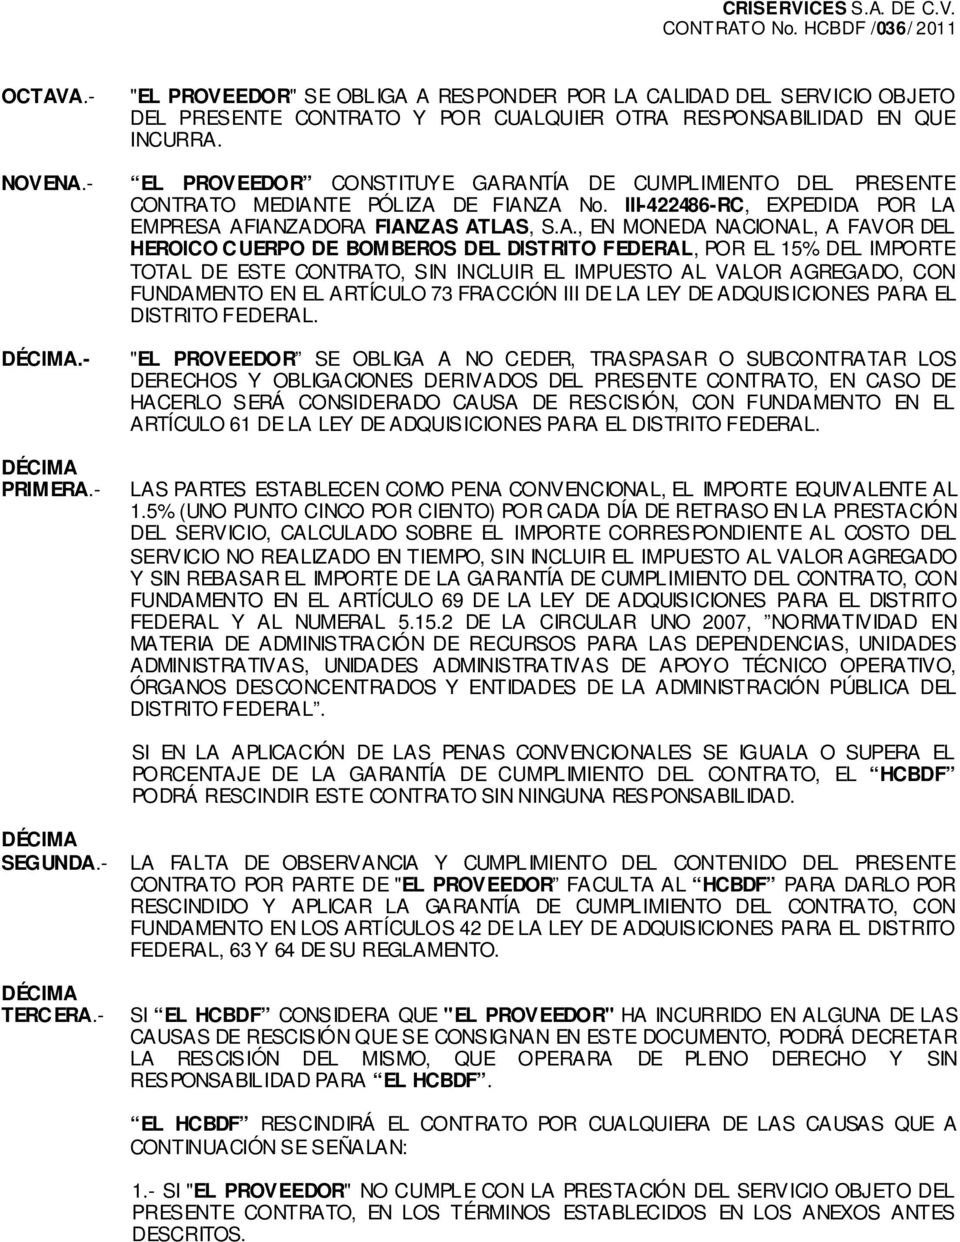 ANTÍA DE CUMPLIMIENTO DEL PRESENTE CONTRATO MEDIANTE PÓLIZA DE FIANZA No. III-422486-RC, EXPEDIDA POR LA EMPRESA AFIANZADORA FIANZAS ATLAS, S.A., EN MONEDA NACIONAL, A FAVOR DEL HEROICO CUERPO DE